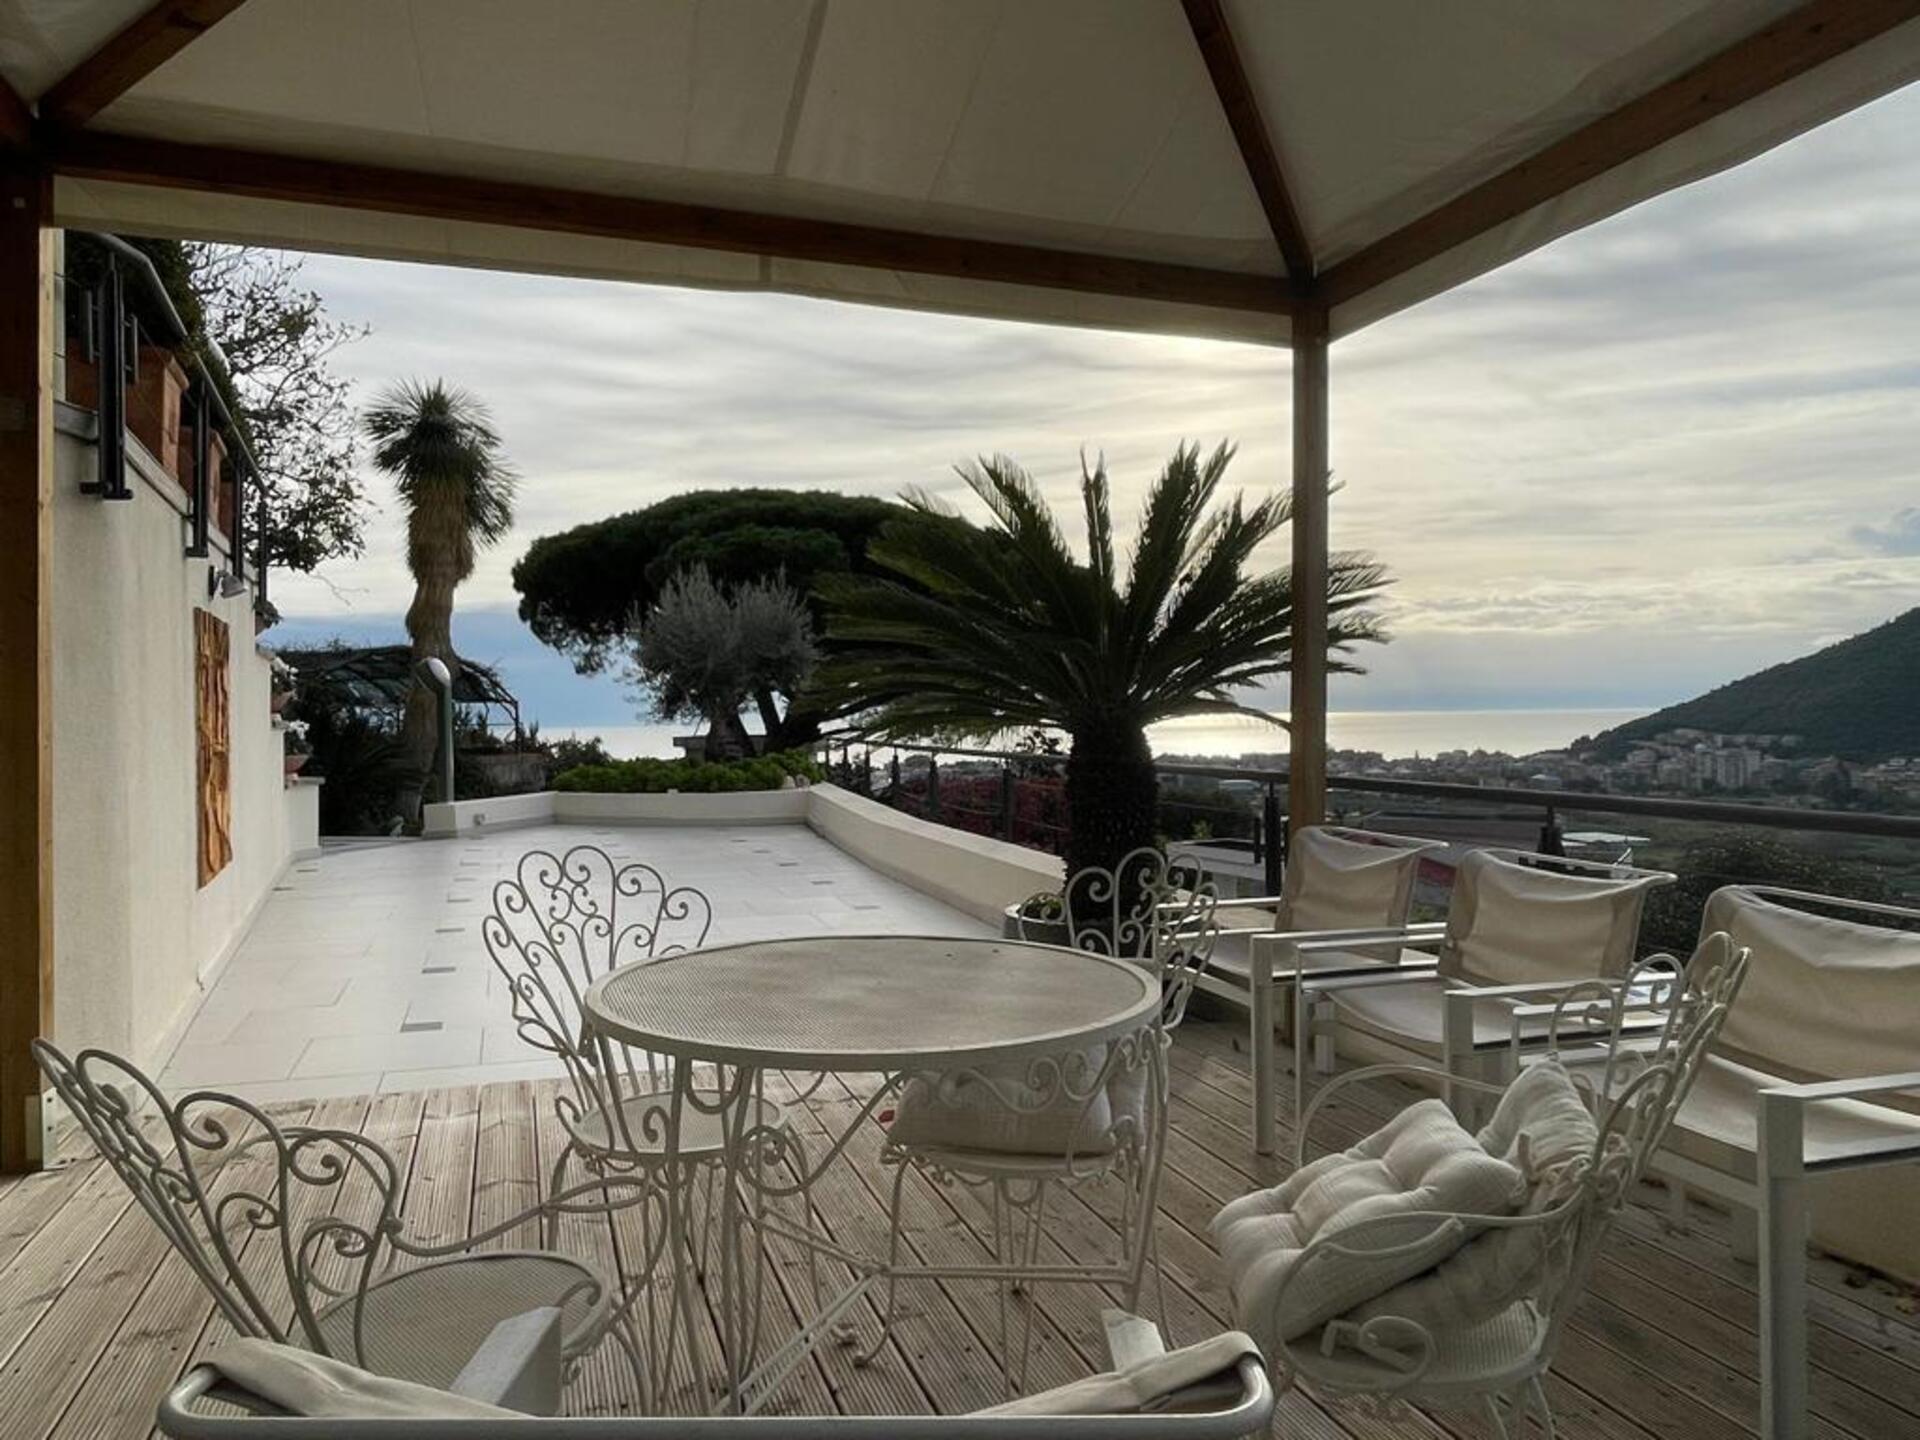 A vendre villa in zone tranquille Borghetto Santo Spirito Liguria